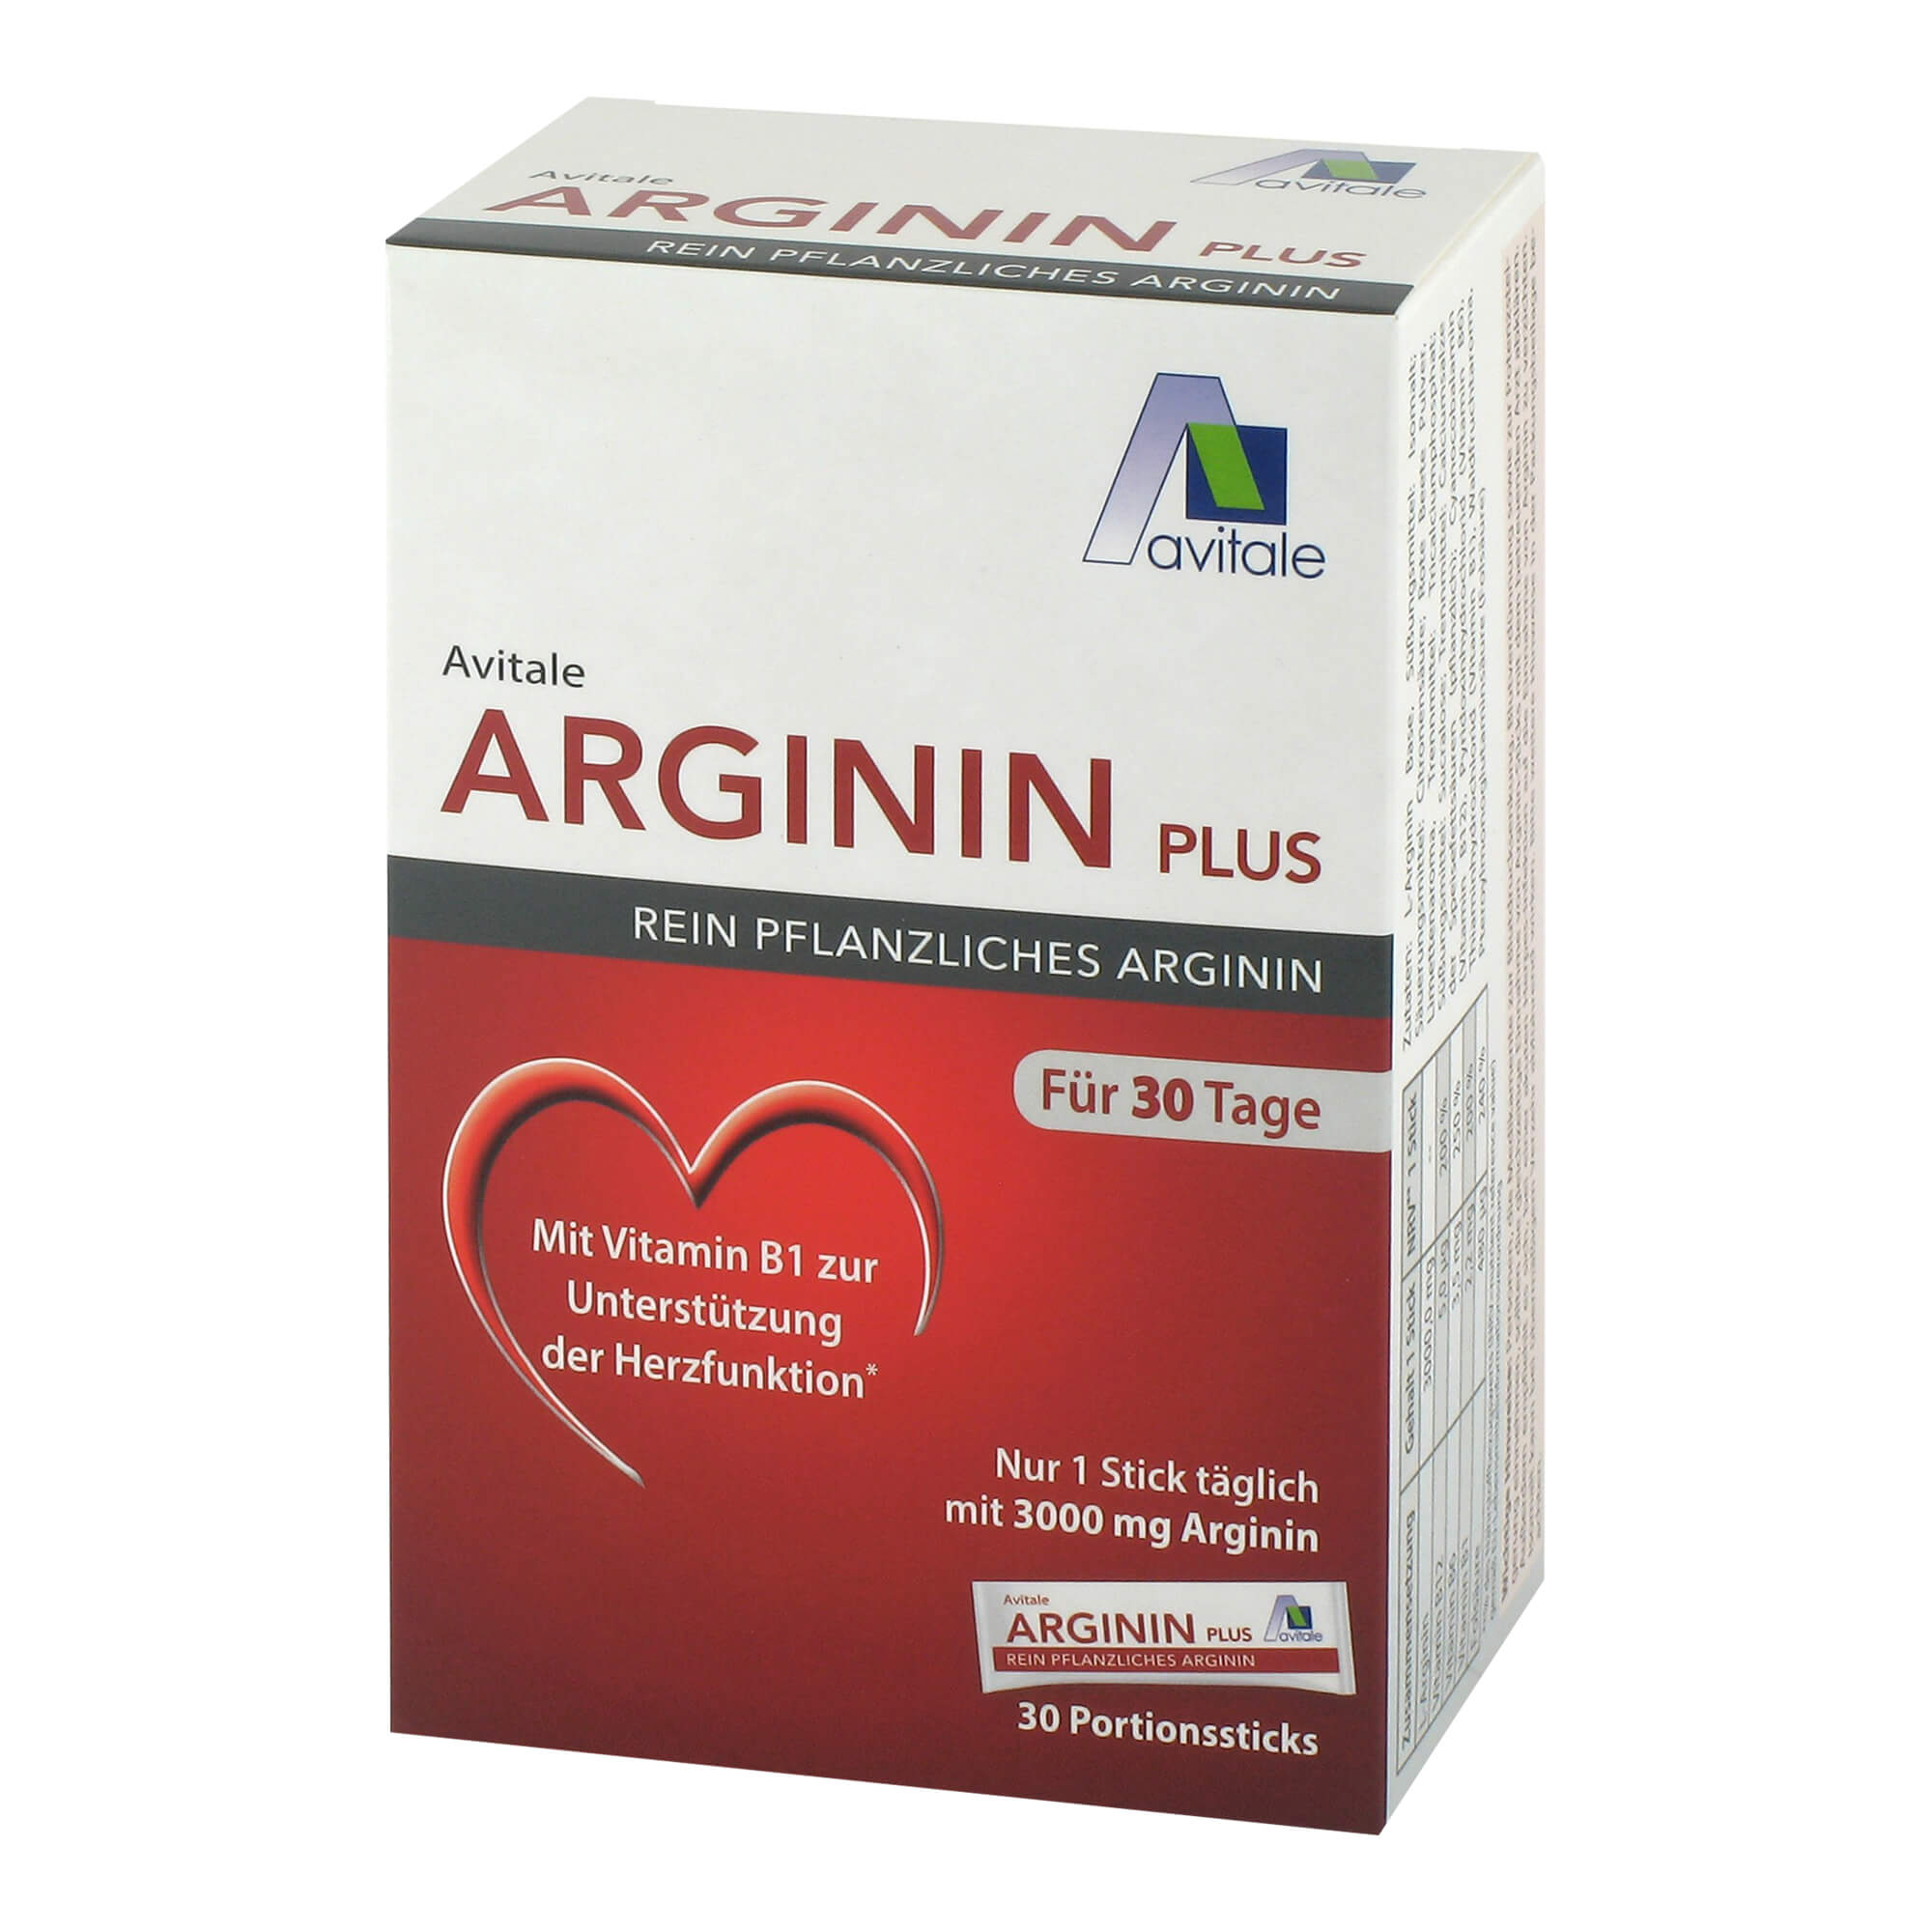 Portionssticks mit 3000 mg rein pflanzlichem Arginin sowie Vitamin B1, B6, B12 und Folsäure.